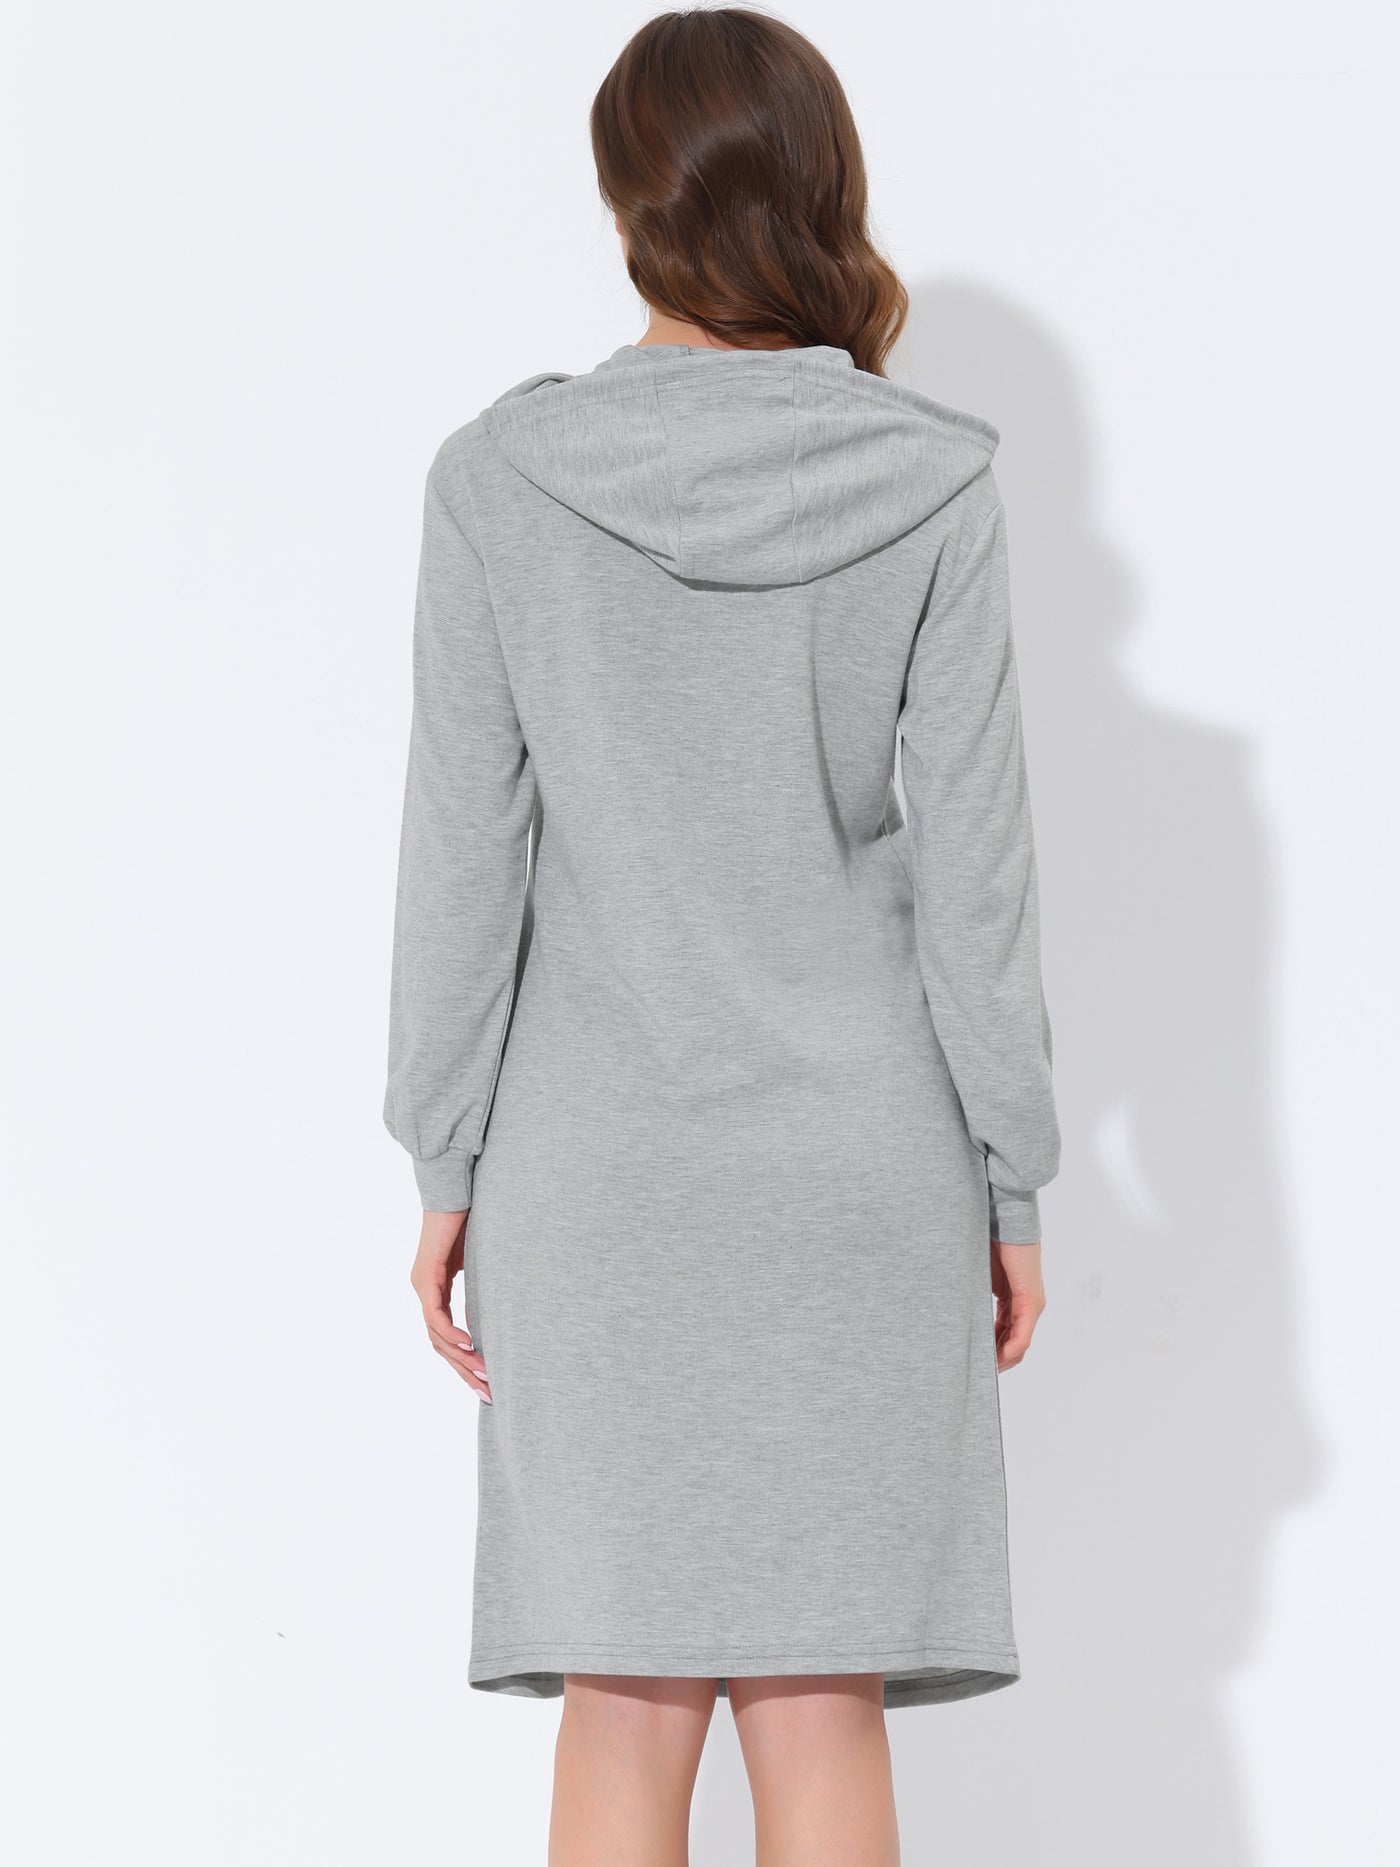 Bublédon Women's Hooded Pockets Dress Lounge Sleepwear Nightgown